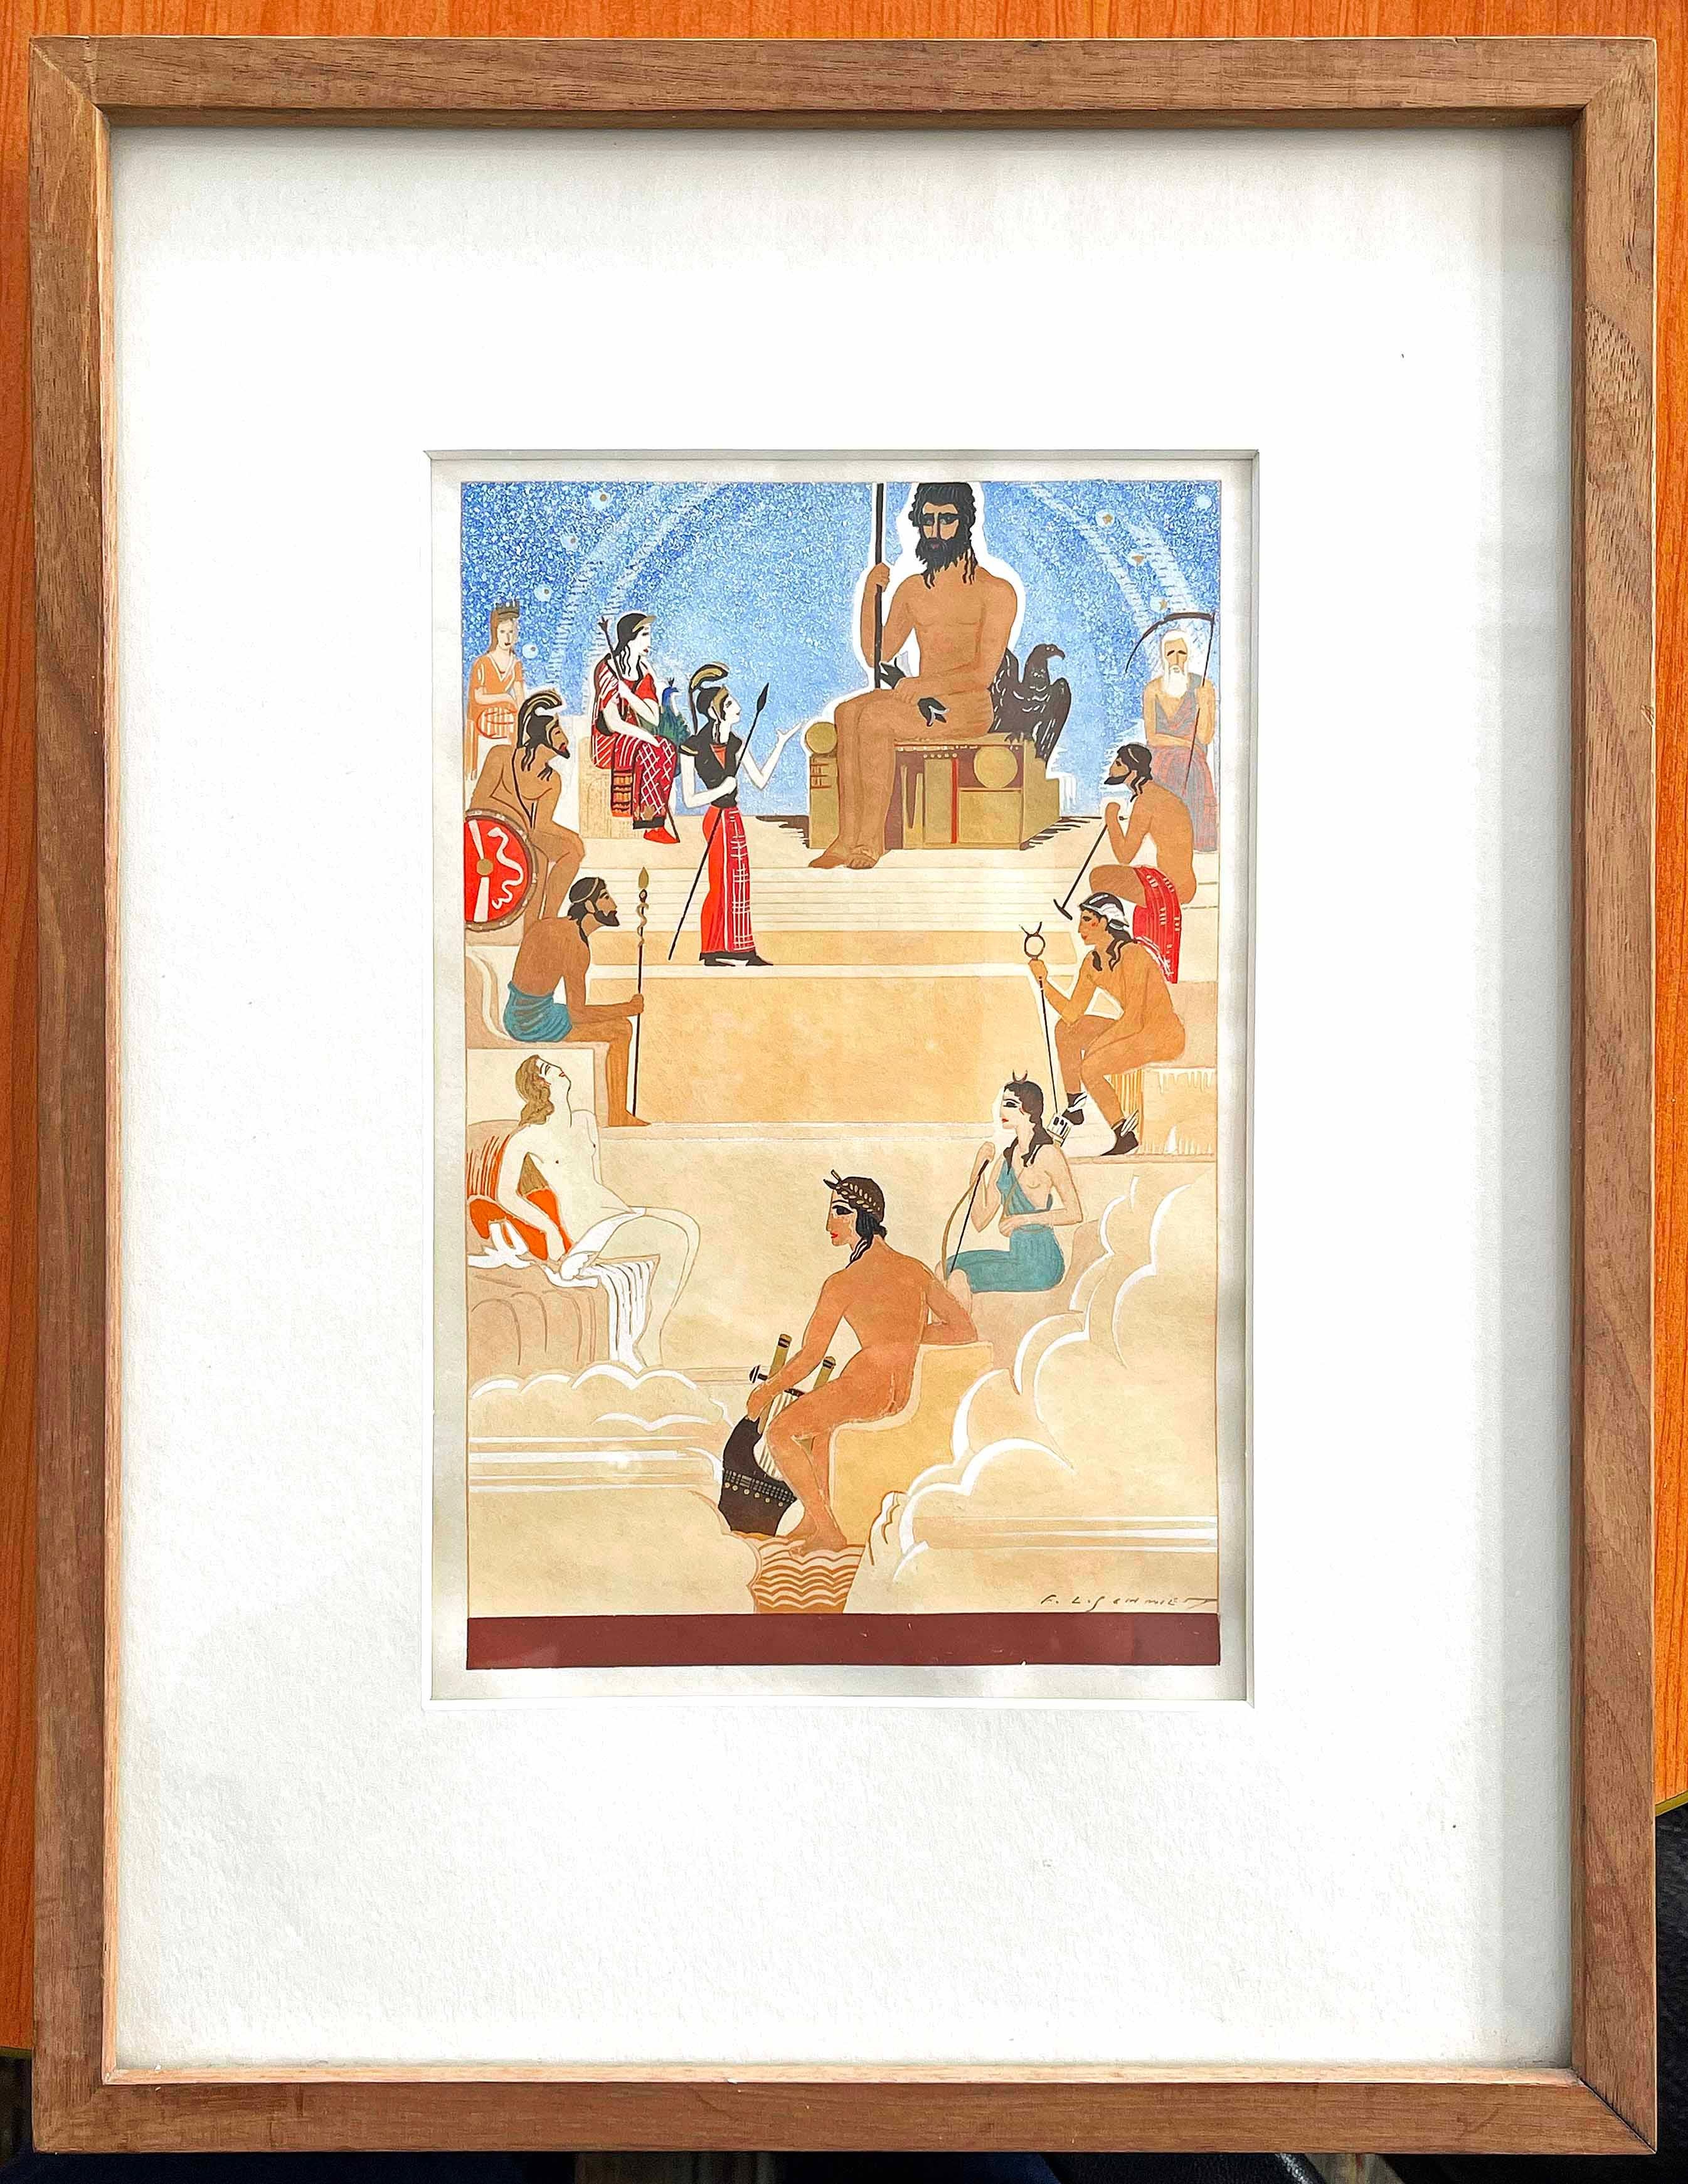 Cette magnifique représentation de Zeus présidant les dieux de l'Olympe a été peinte par François-Louis Schmied, l'un des deux plus grands artistes français spécialisés dans la conception et l'illustration de livres haut de gamme, avec Georges